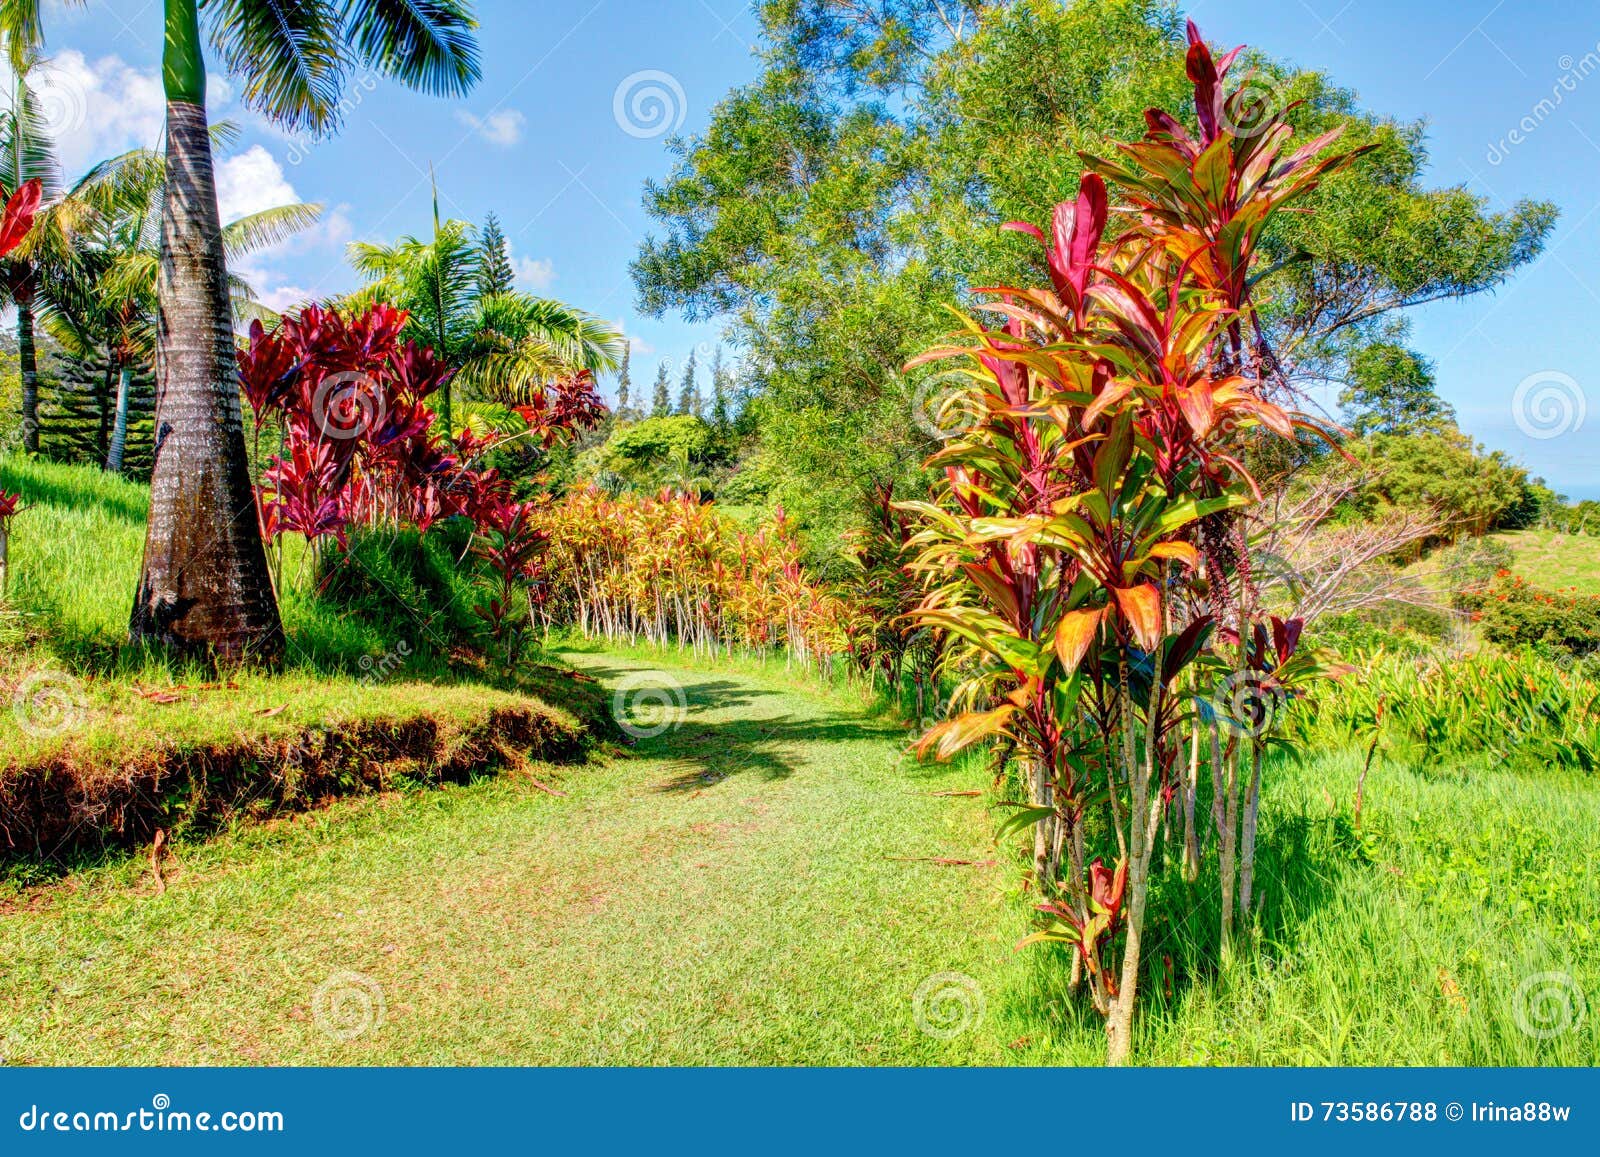 Palms In Tropical Garden Garden Of Eden Maui Hawaii Stock Photo